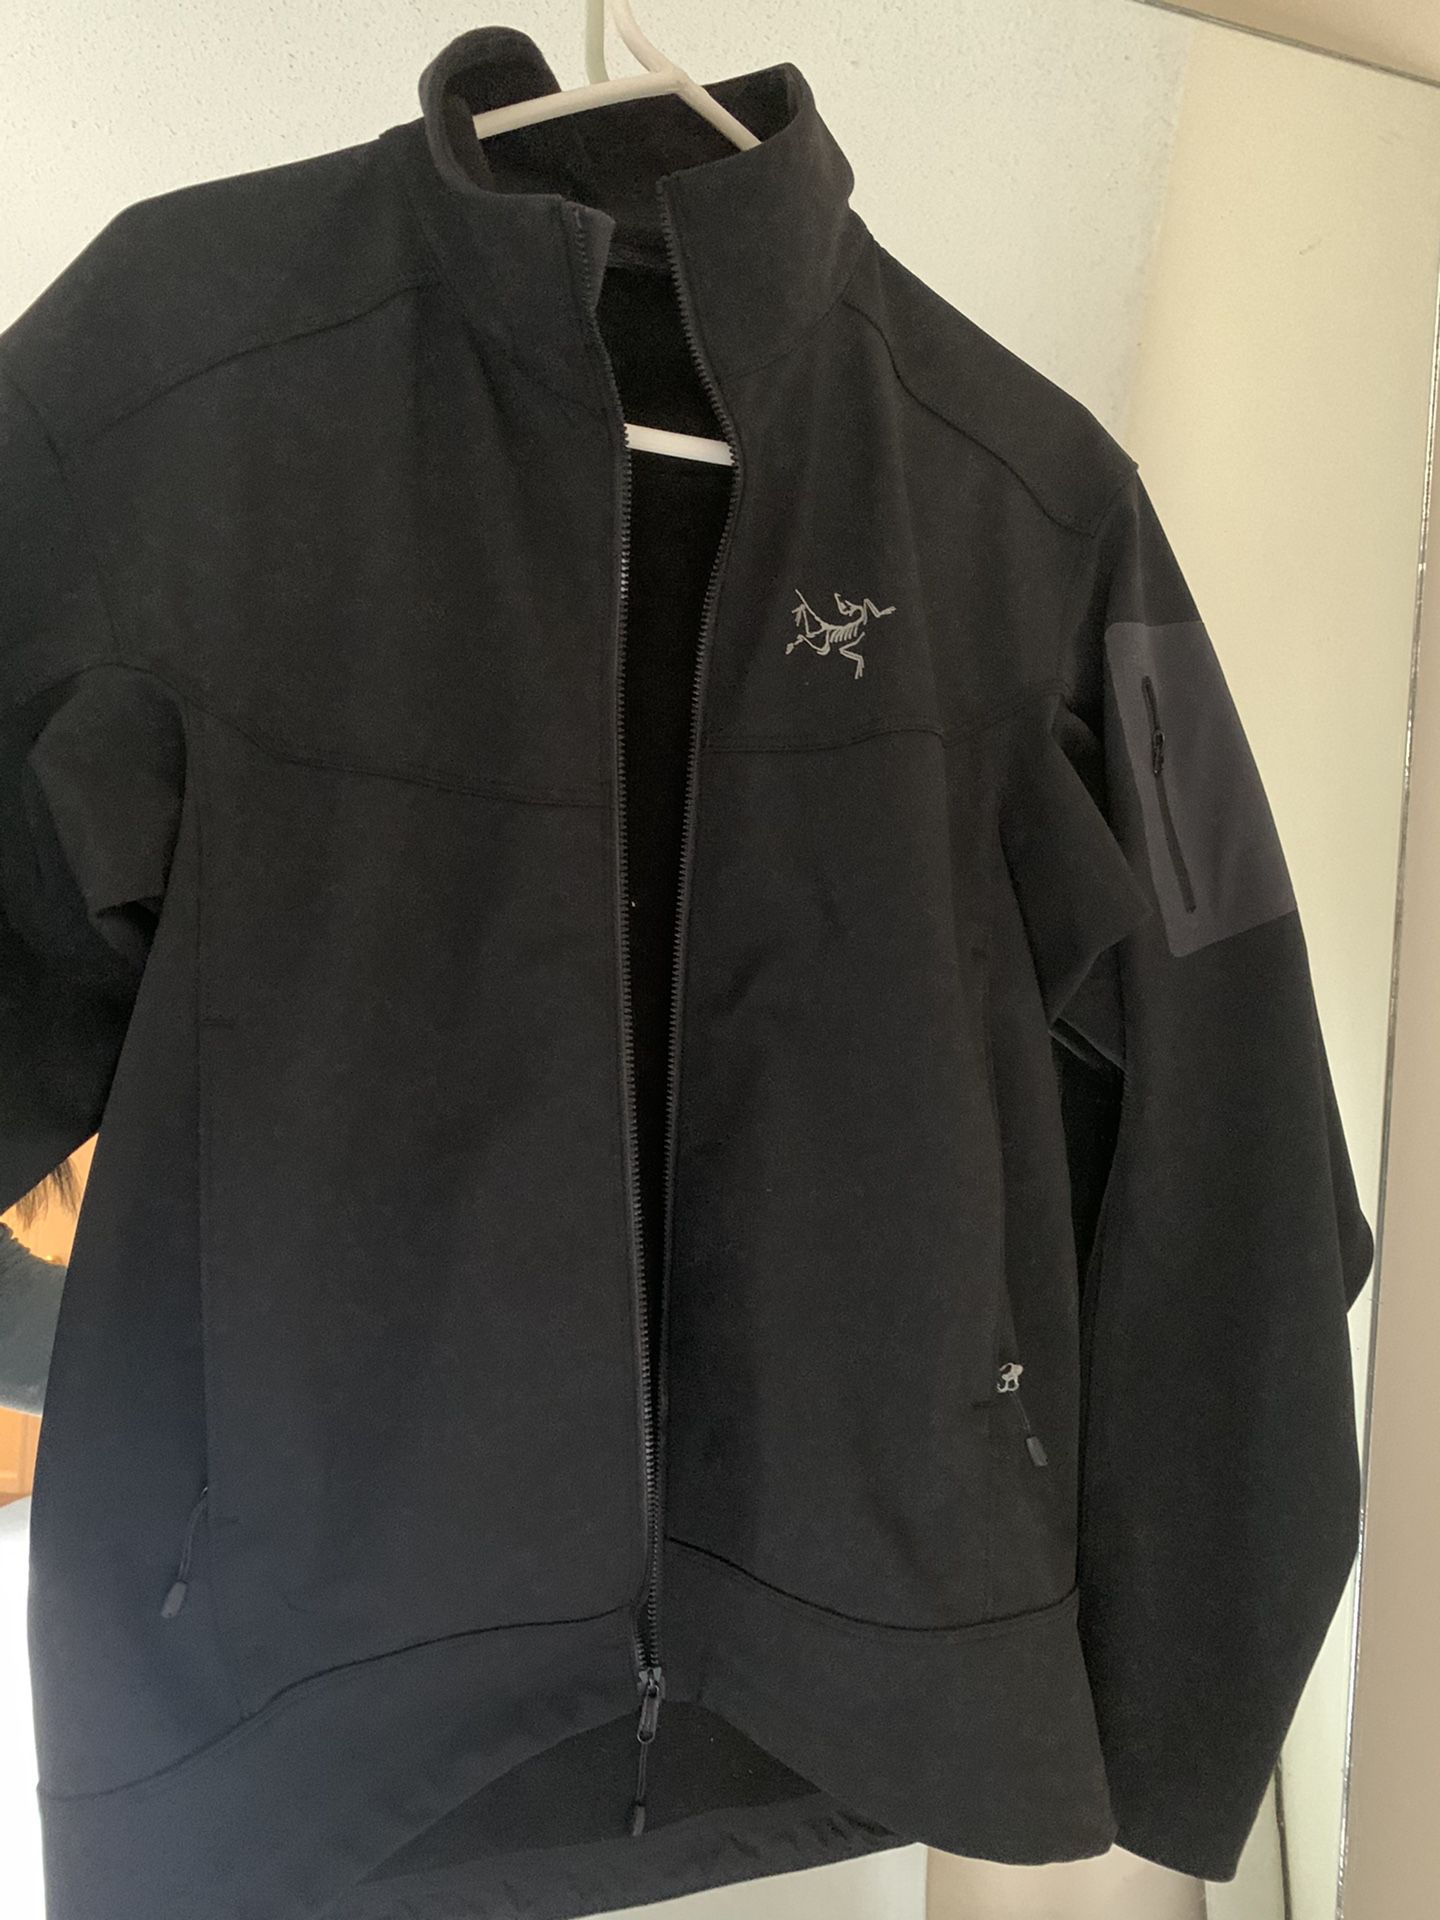 Arc’Teryxs Men’s Jacket Size Small